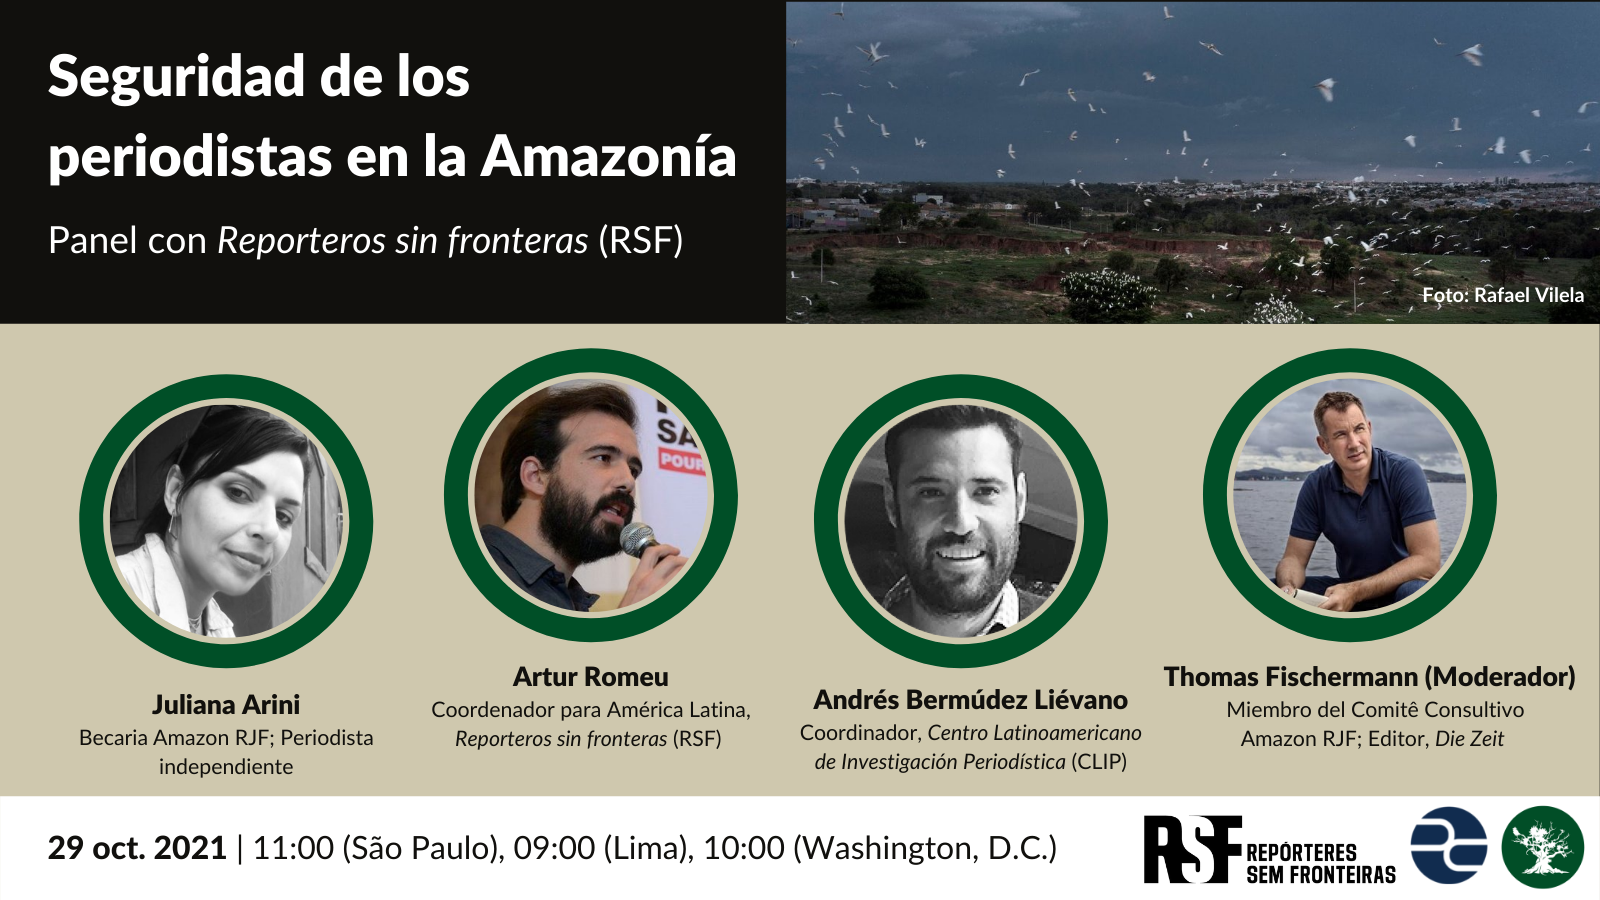 Seguridad de los periodistas en la Amazonia